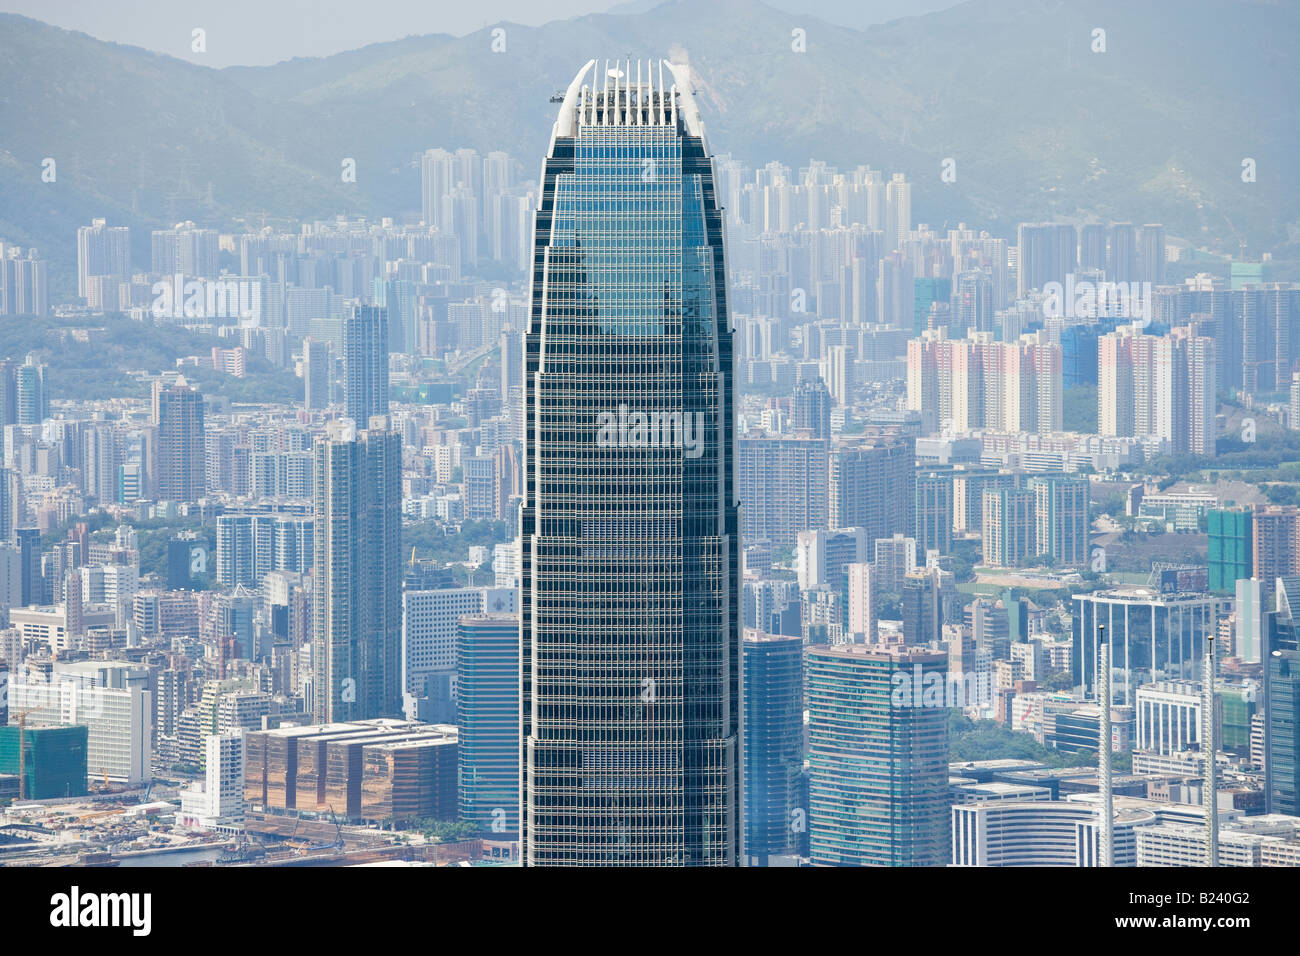 Deux International Finance Centre IFC2, Hong Kong SAR, Chine. Jusqu'en 2010 la plus haute tour de HK. Kowloon dans l'arrière-plan. Banque D'Images